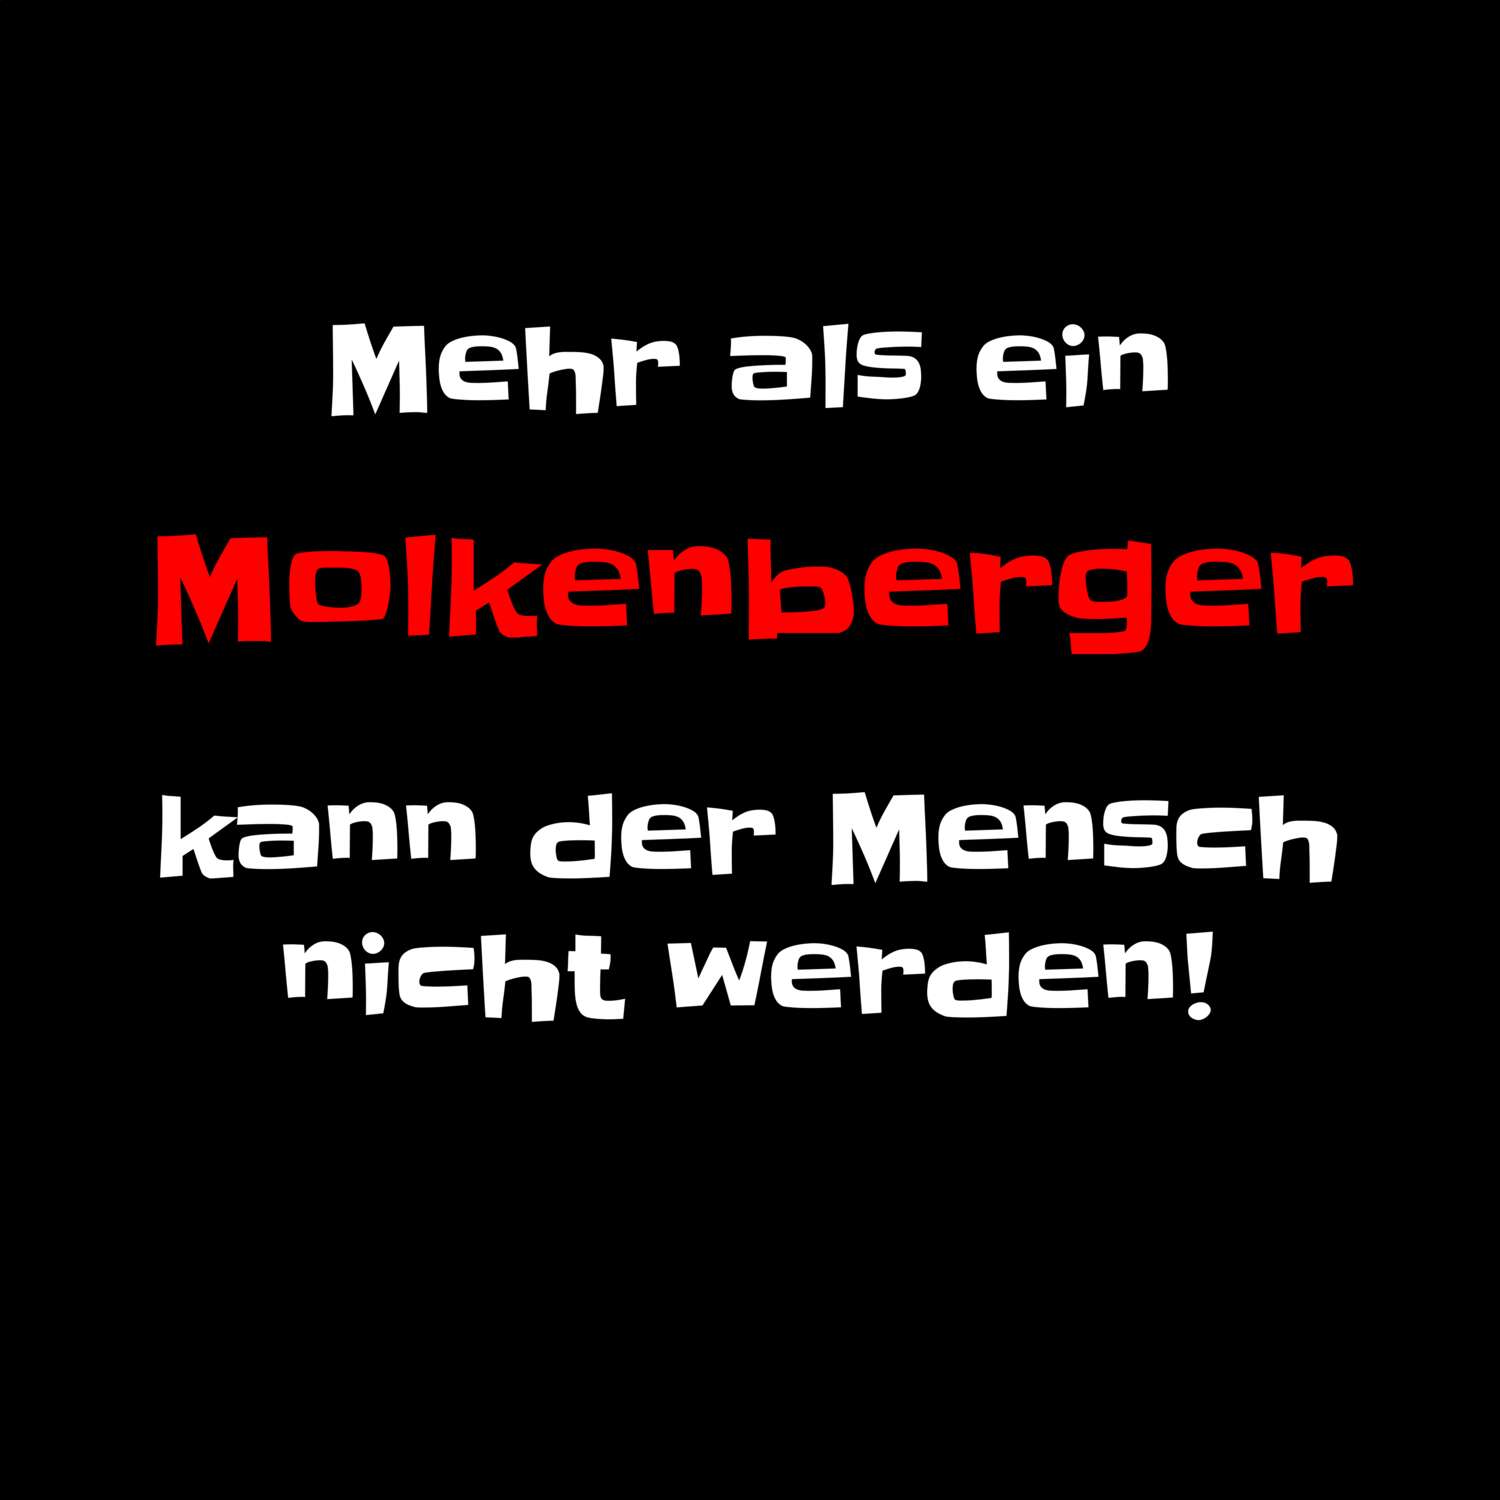 Molkenberg T-Shirt »Mehr als ein«